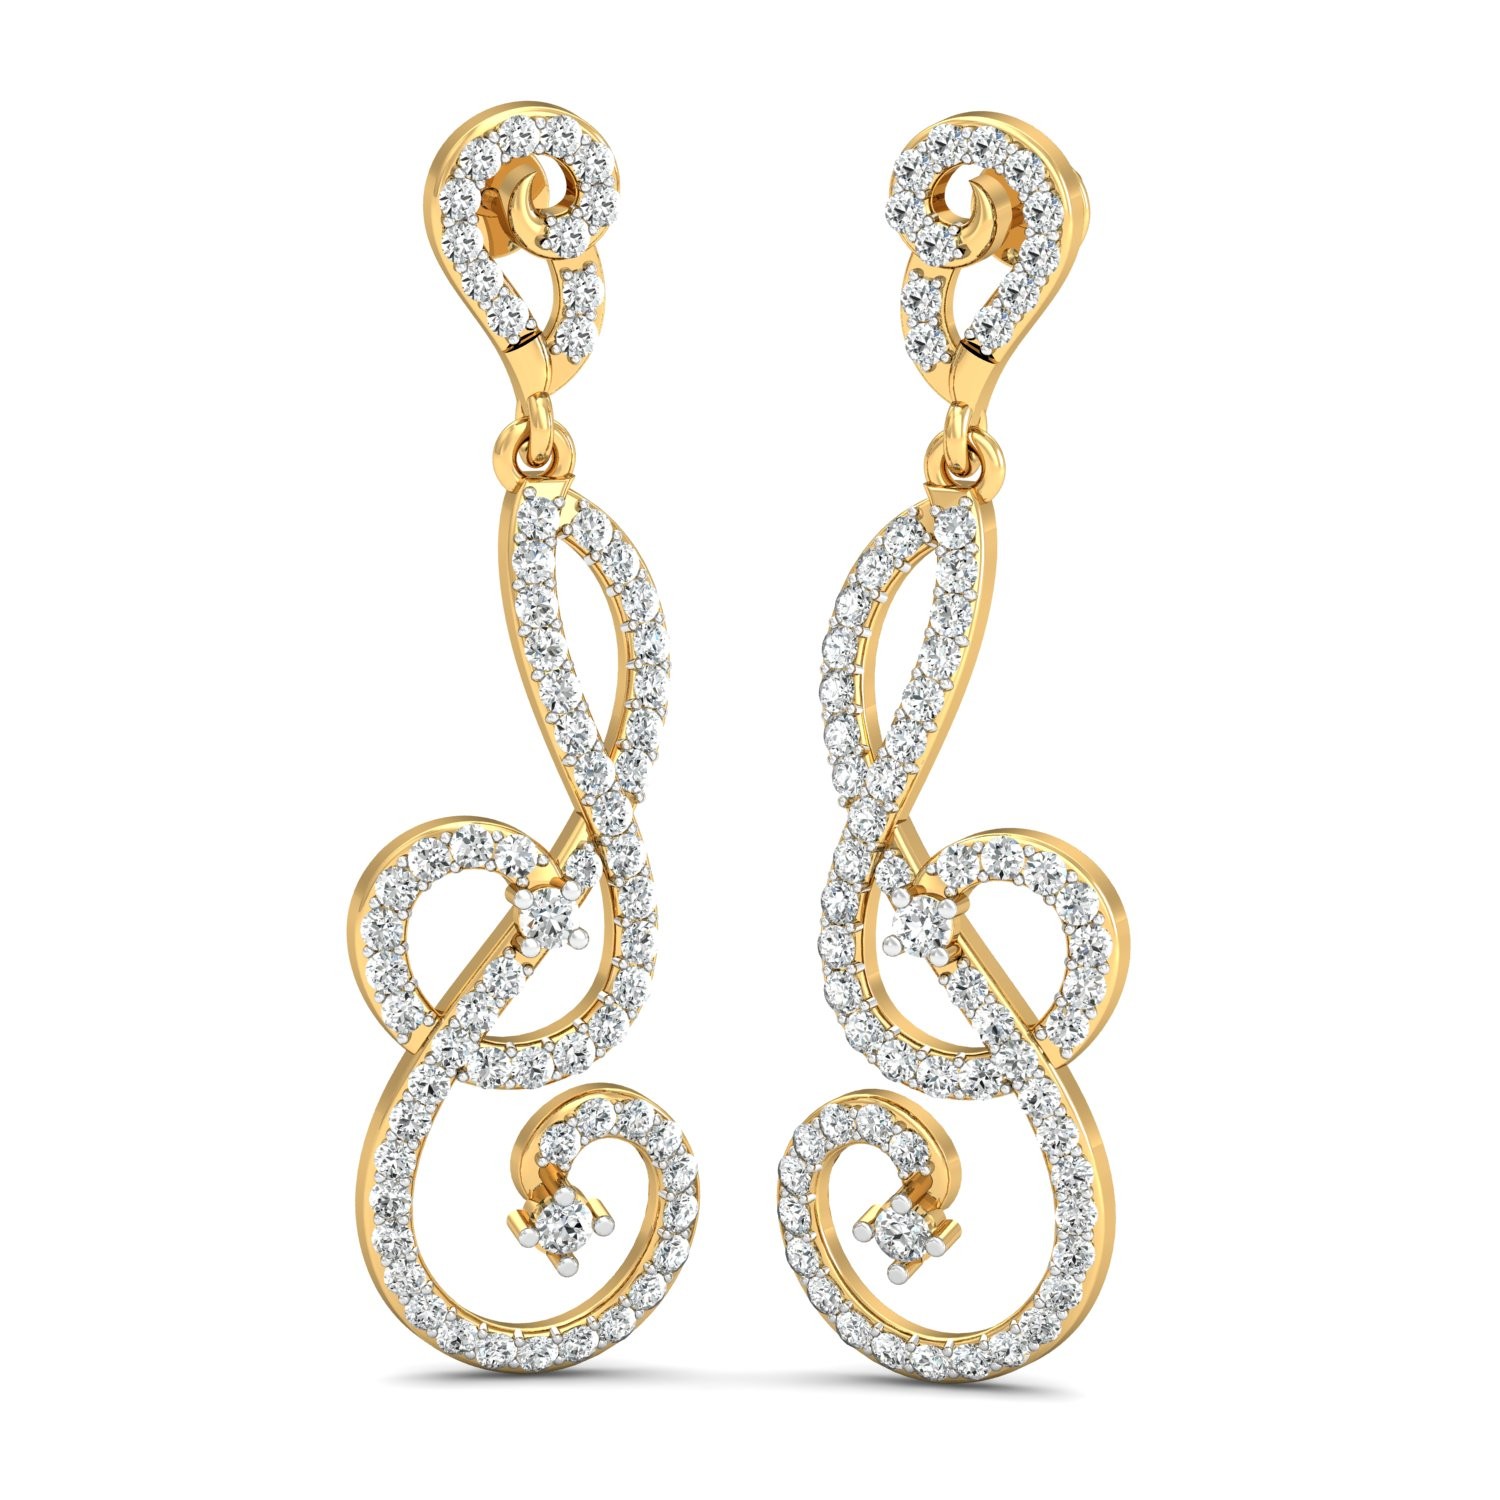 The Lixia Diamond Long Earrings